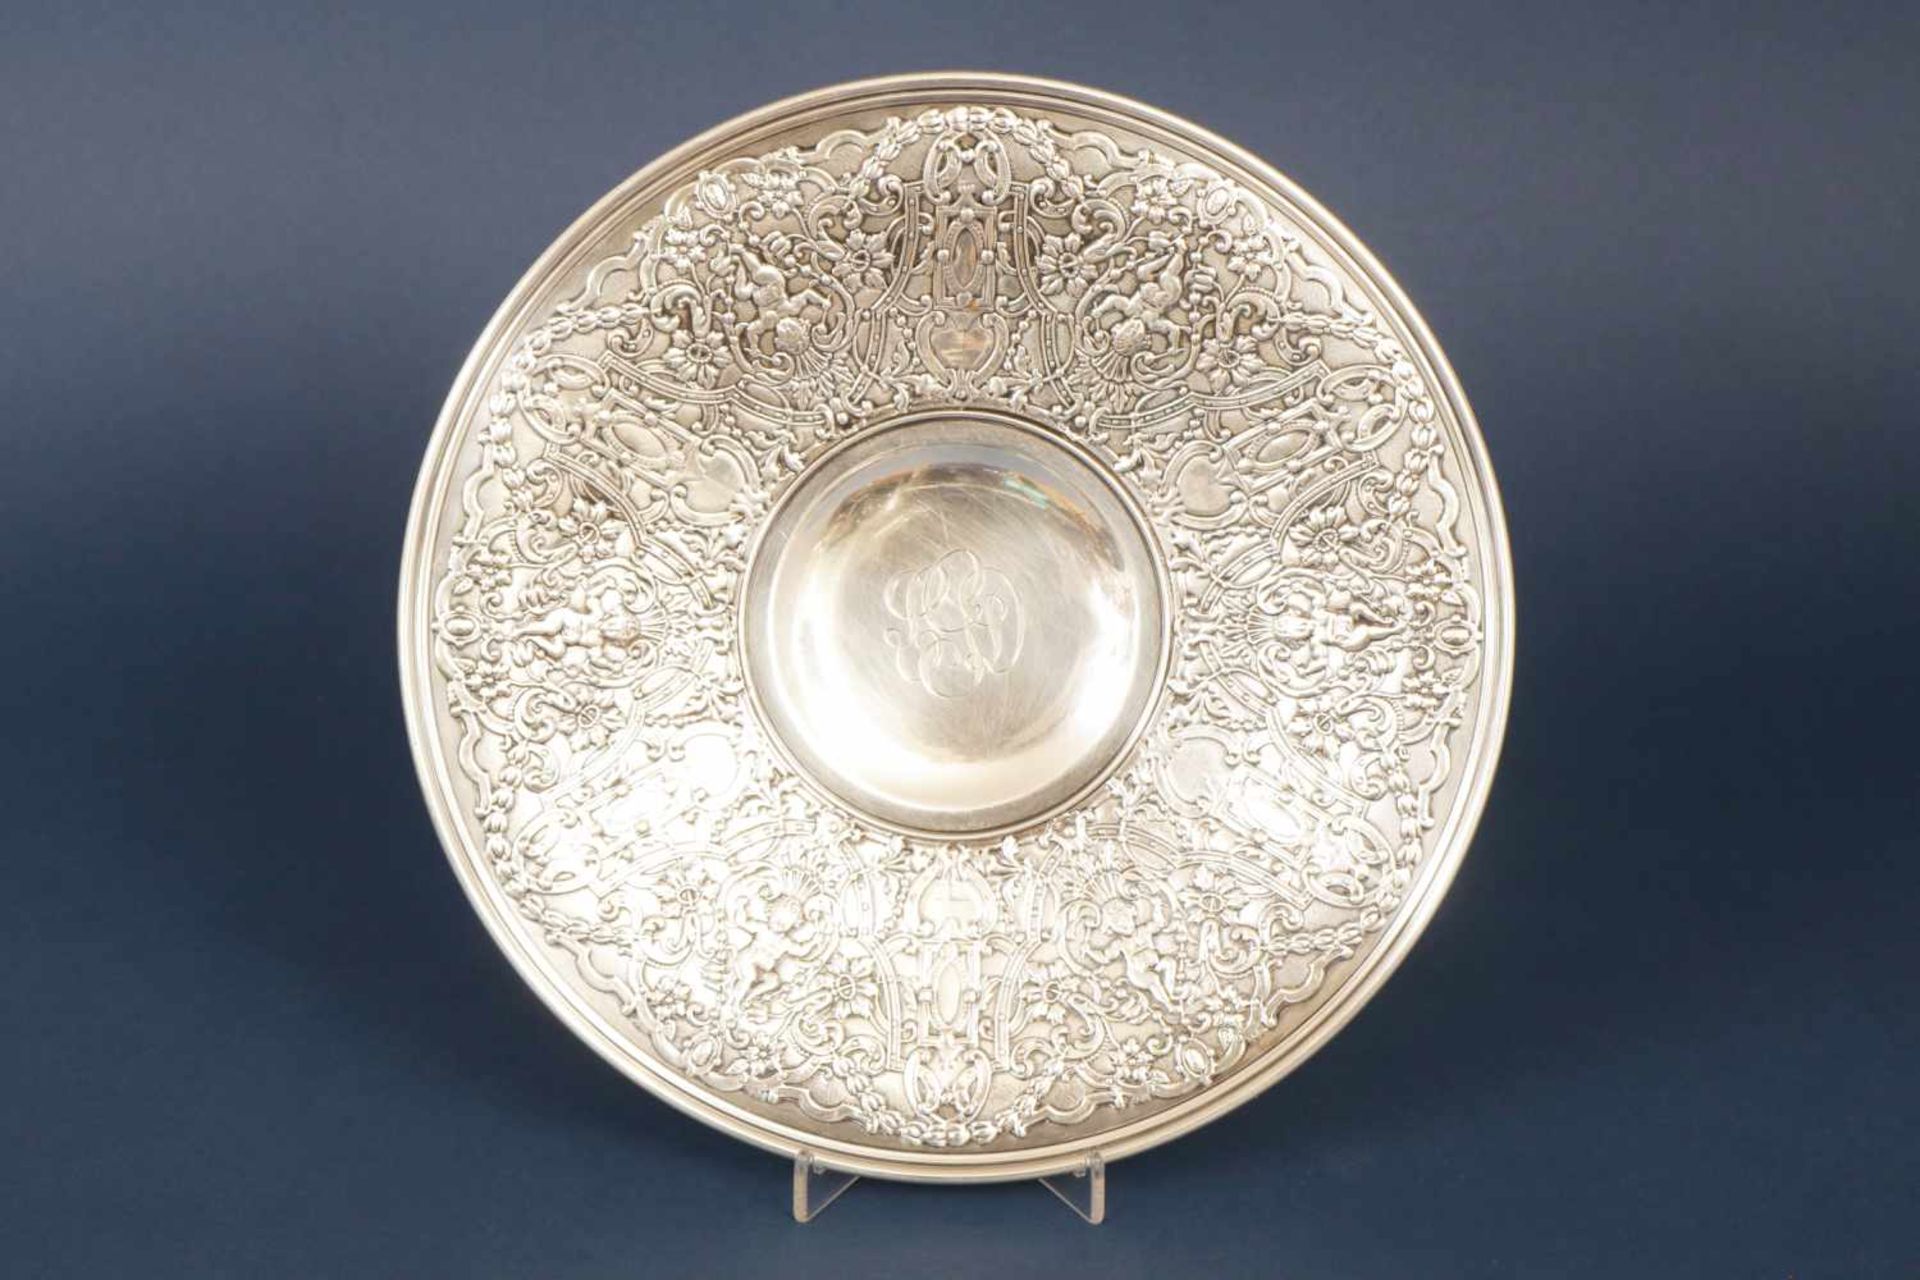 Silber-TellerSterling Silber, USA, um 1920, runder Teller mit reliefiertem Floral- und Puttendekor